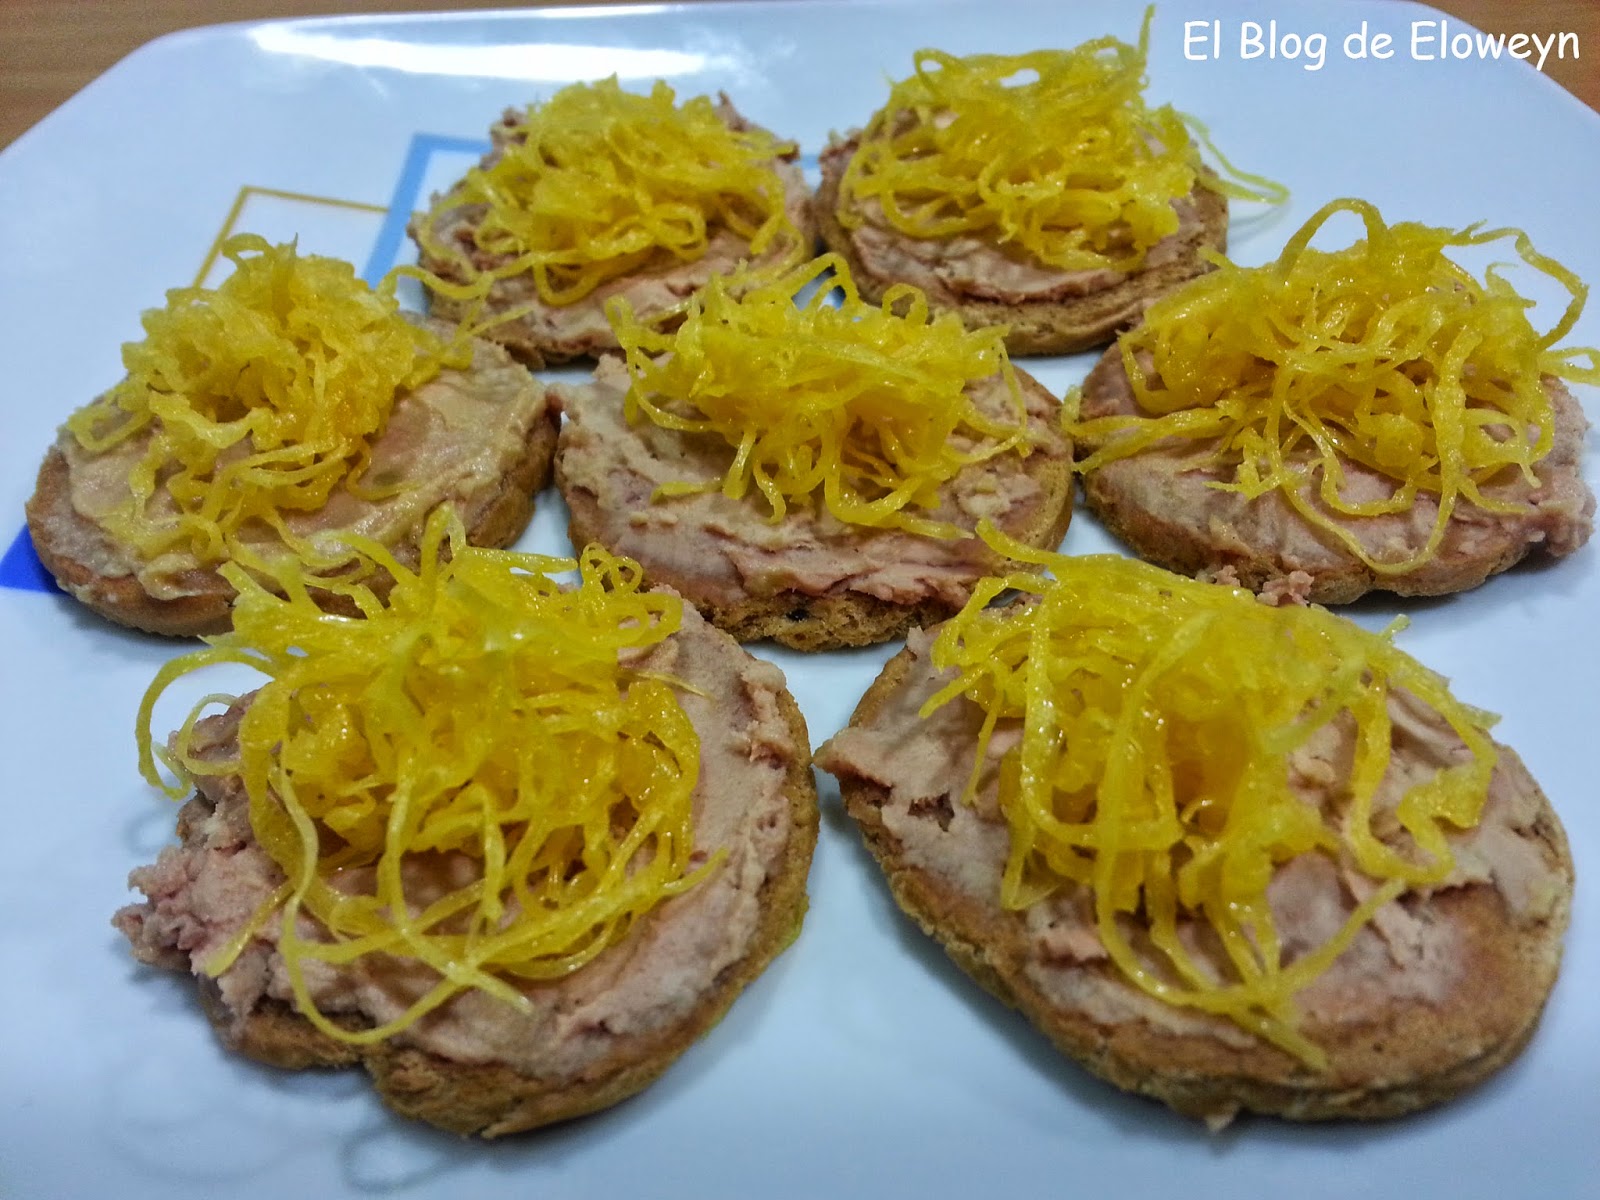 Canapés de foie y huevo hilado | El Blog de Eloweyn